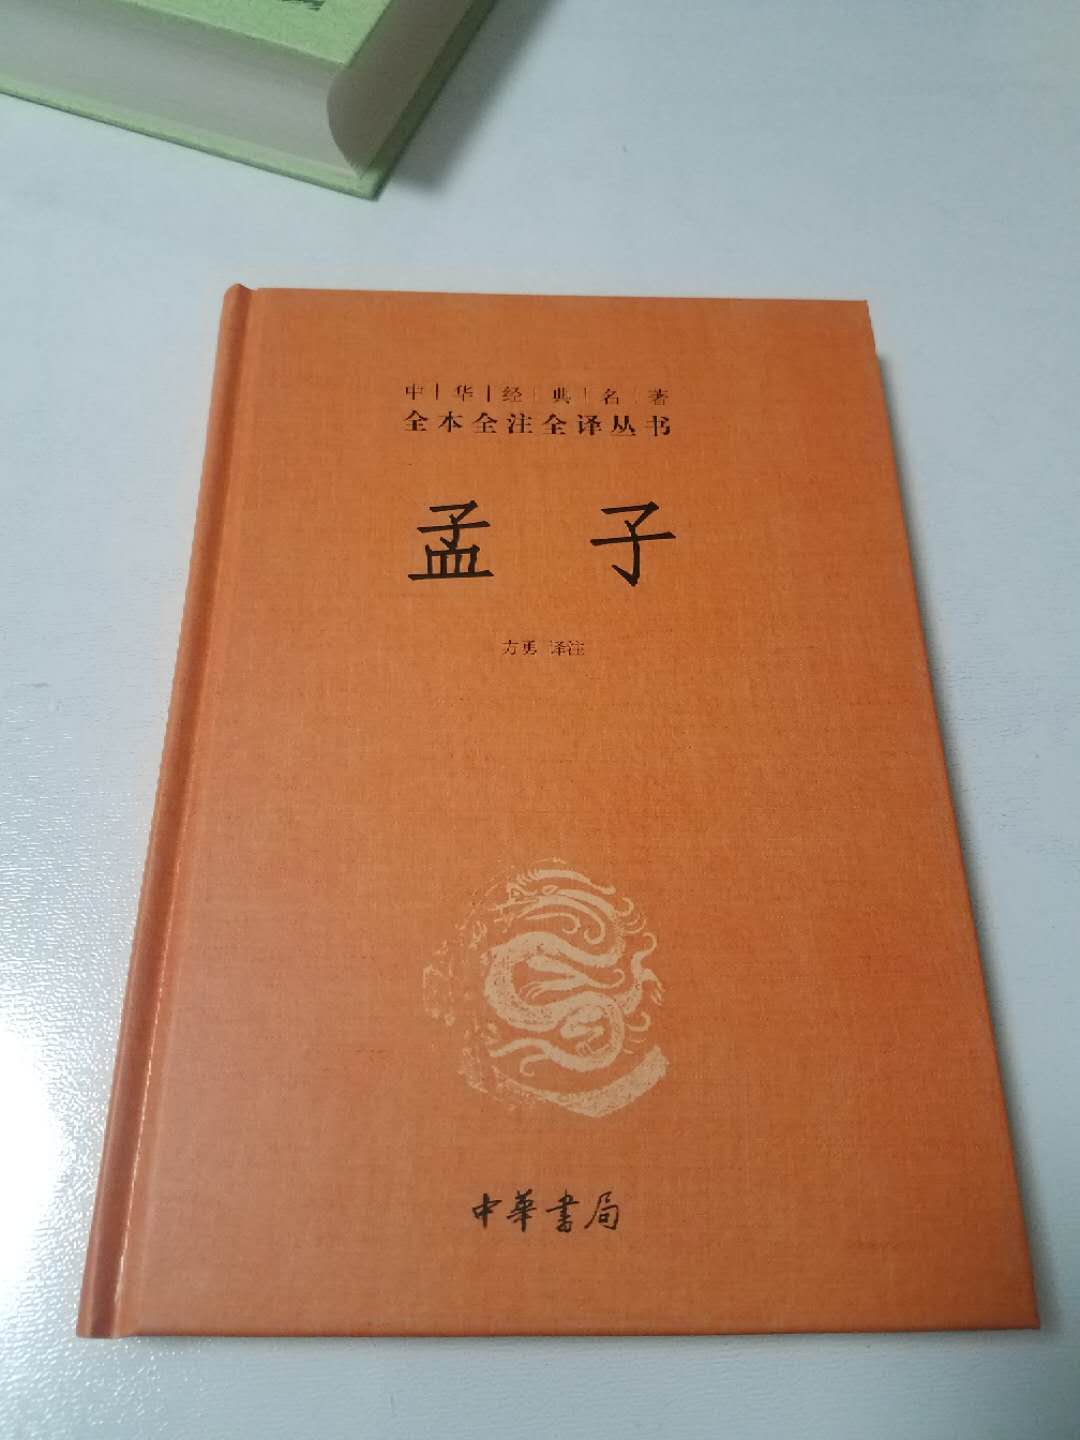 中华书局这套黄色的书都不错，我会慢慢收齐的。这本书有注释和翻译，文言文功底不怎么好也可以看，慢慢来，多积累咯，读读古文总是没错的嘛！???